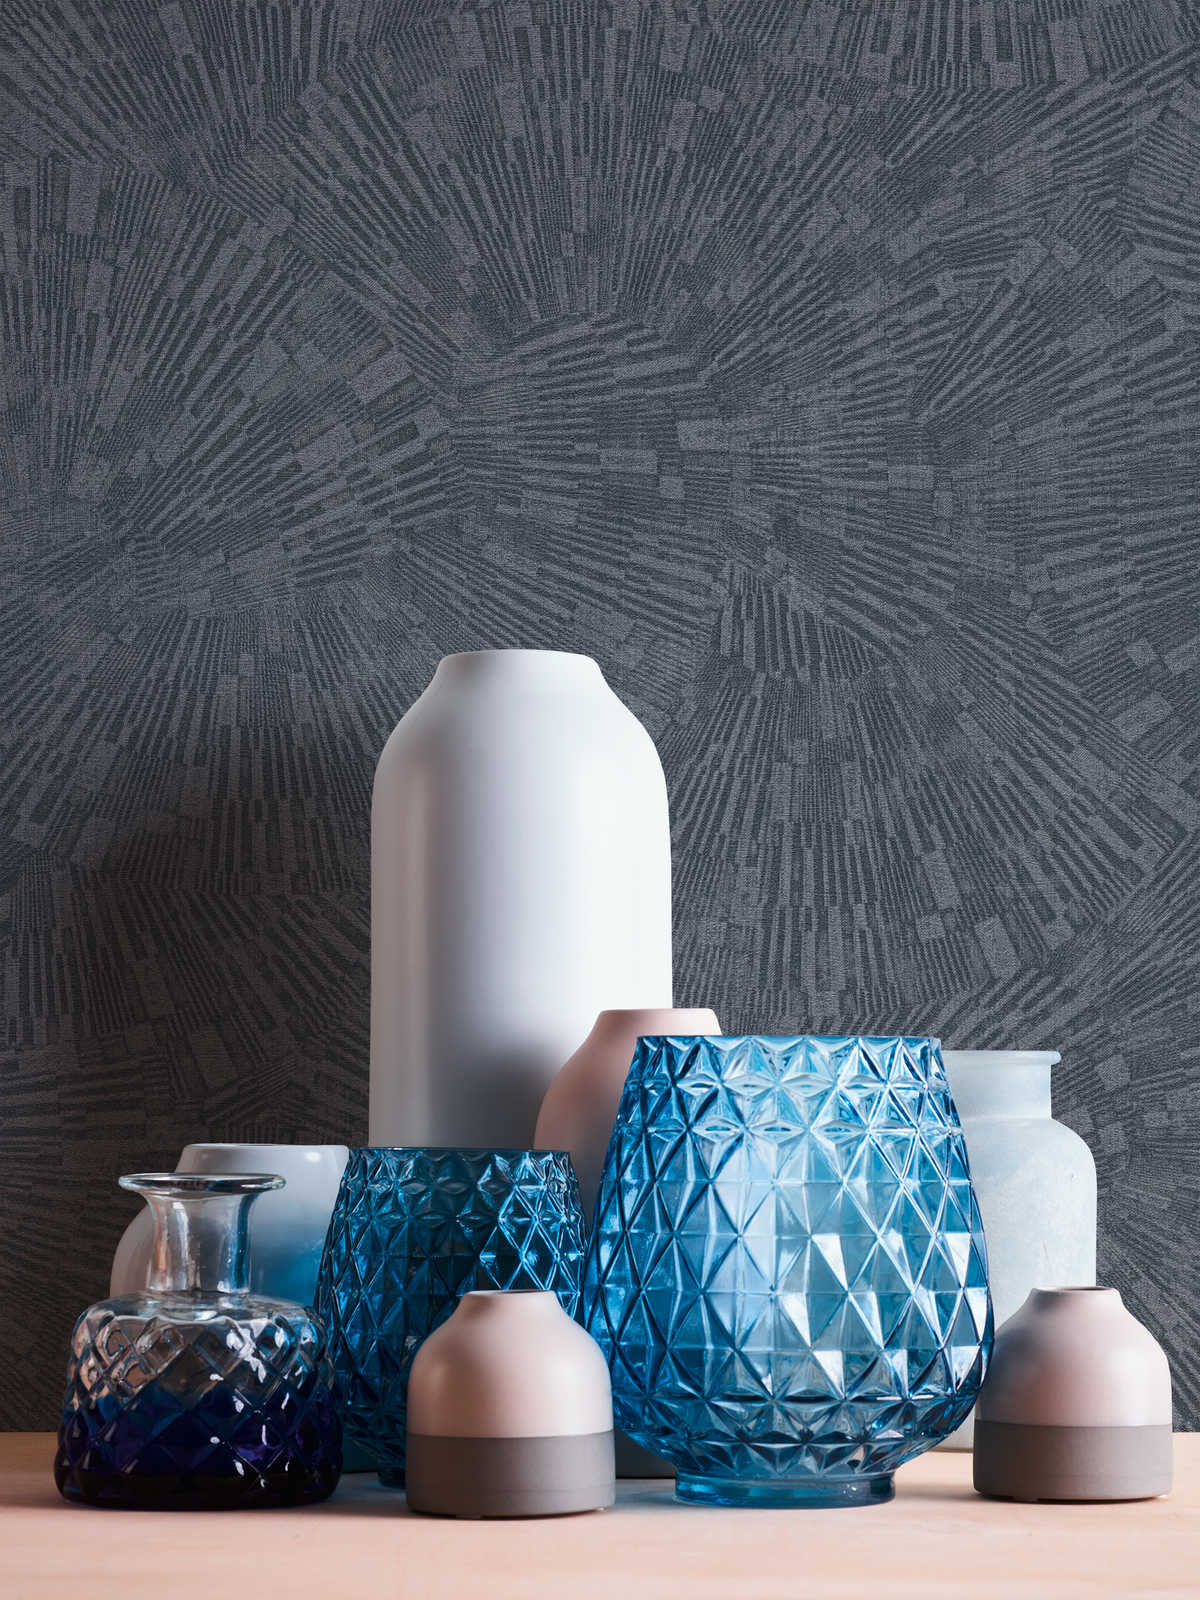             Effen behang met grafisch patroon & glanseffect - Blauw
        